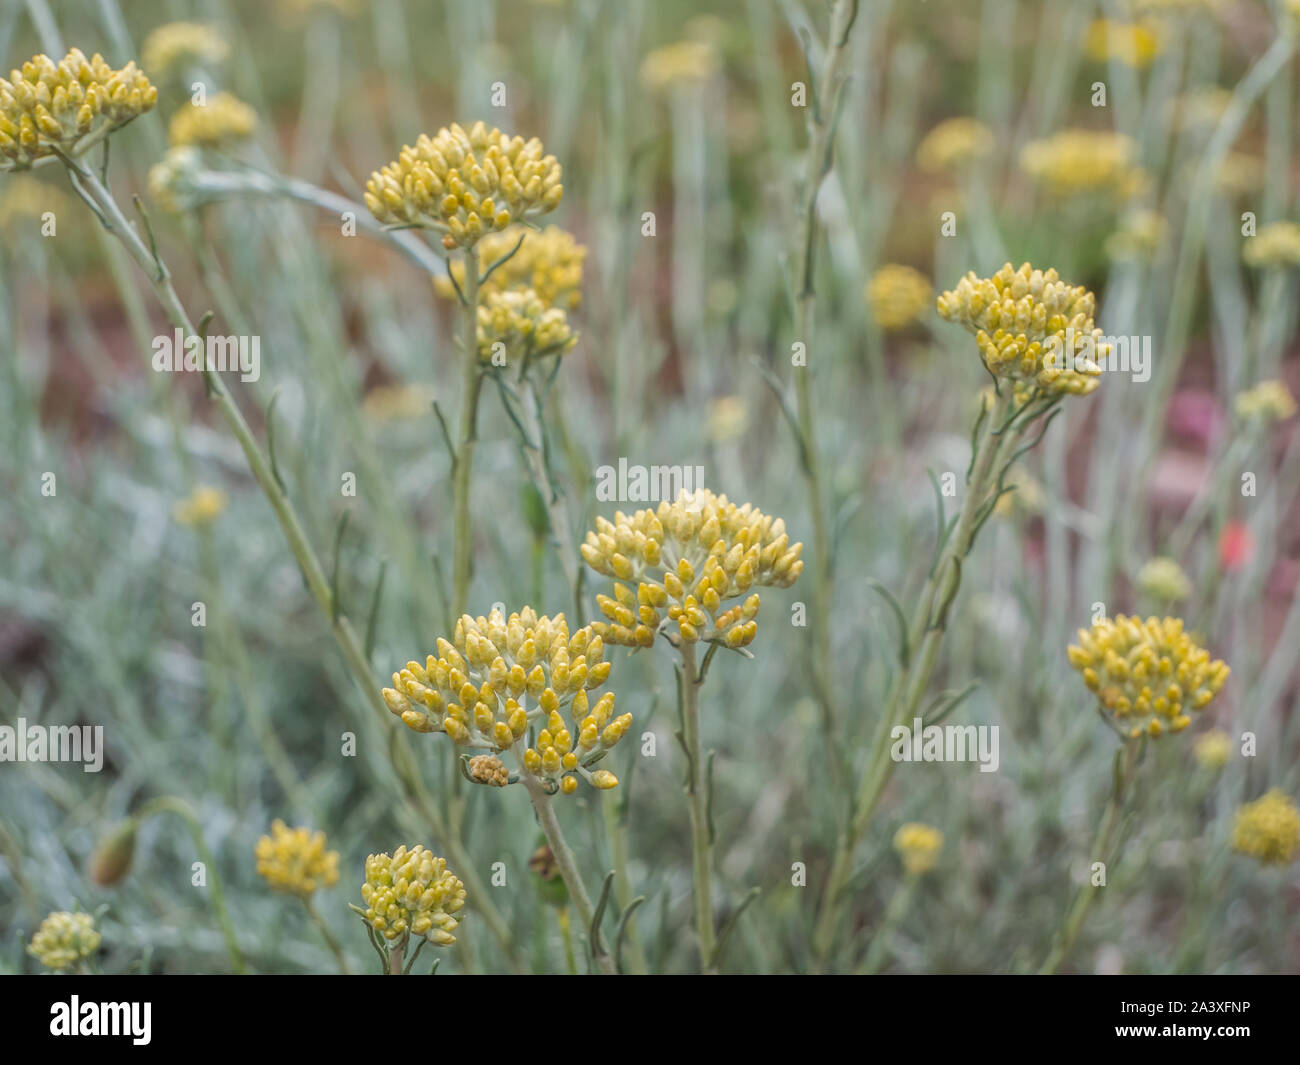 Helichrysum italicum plant Stock Photo